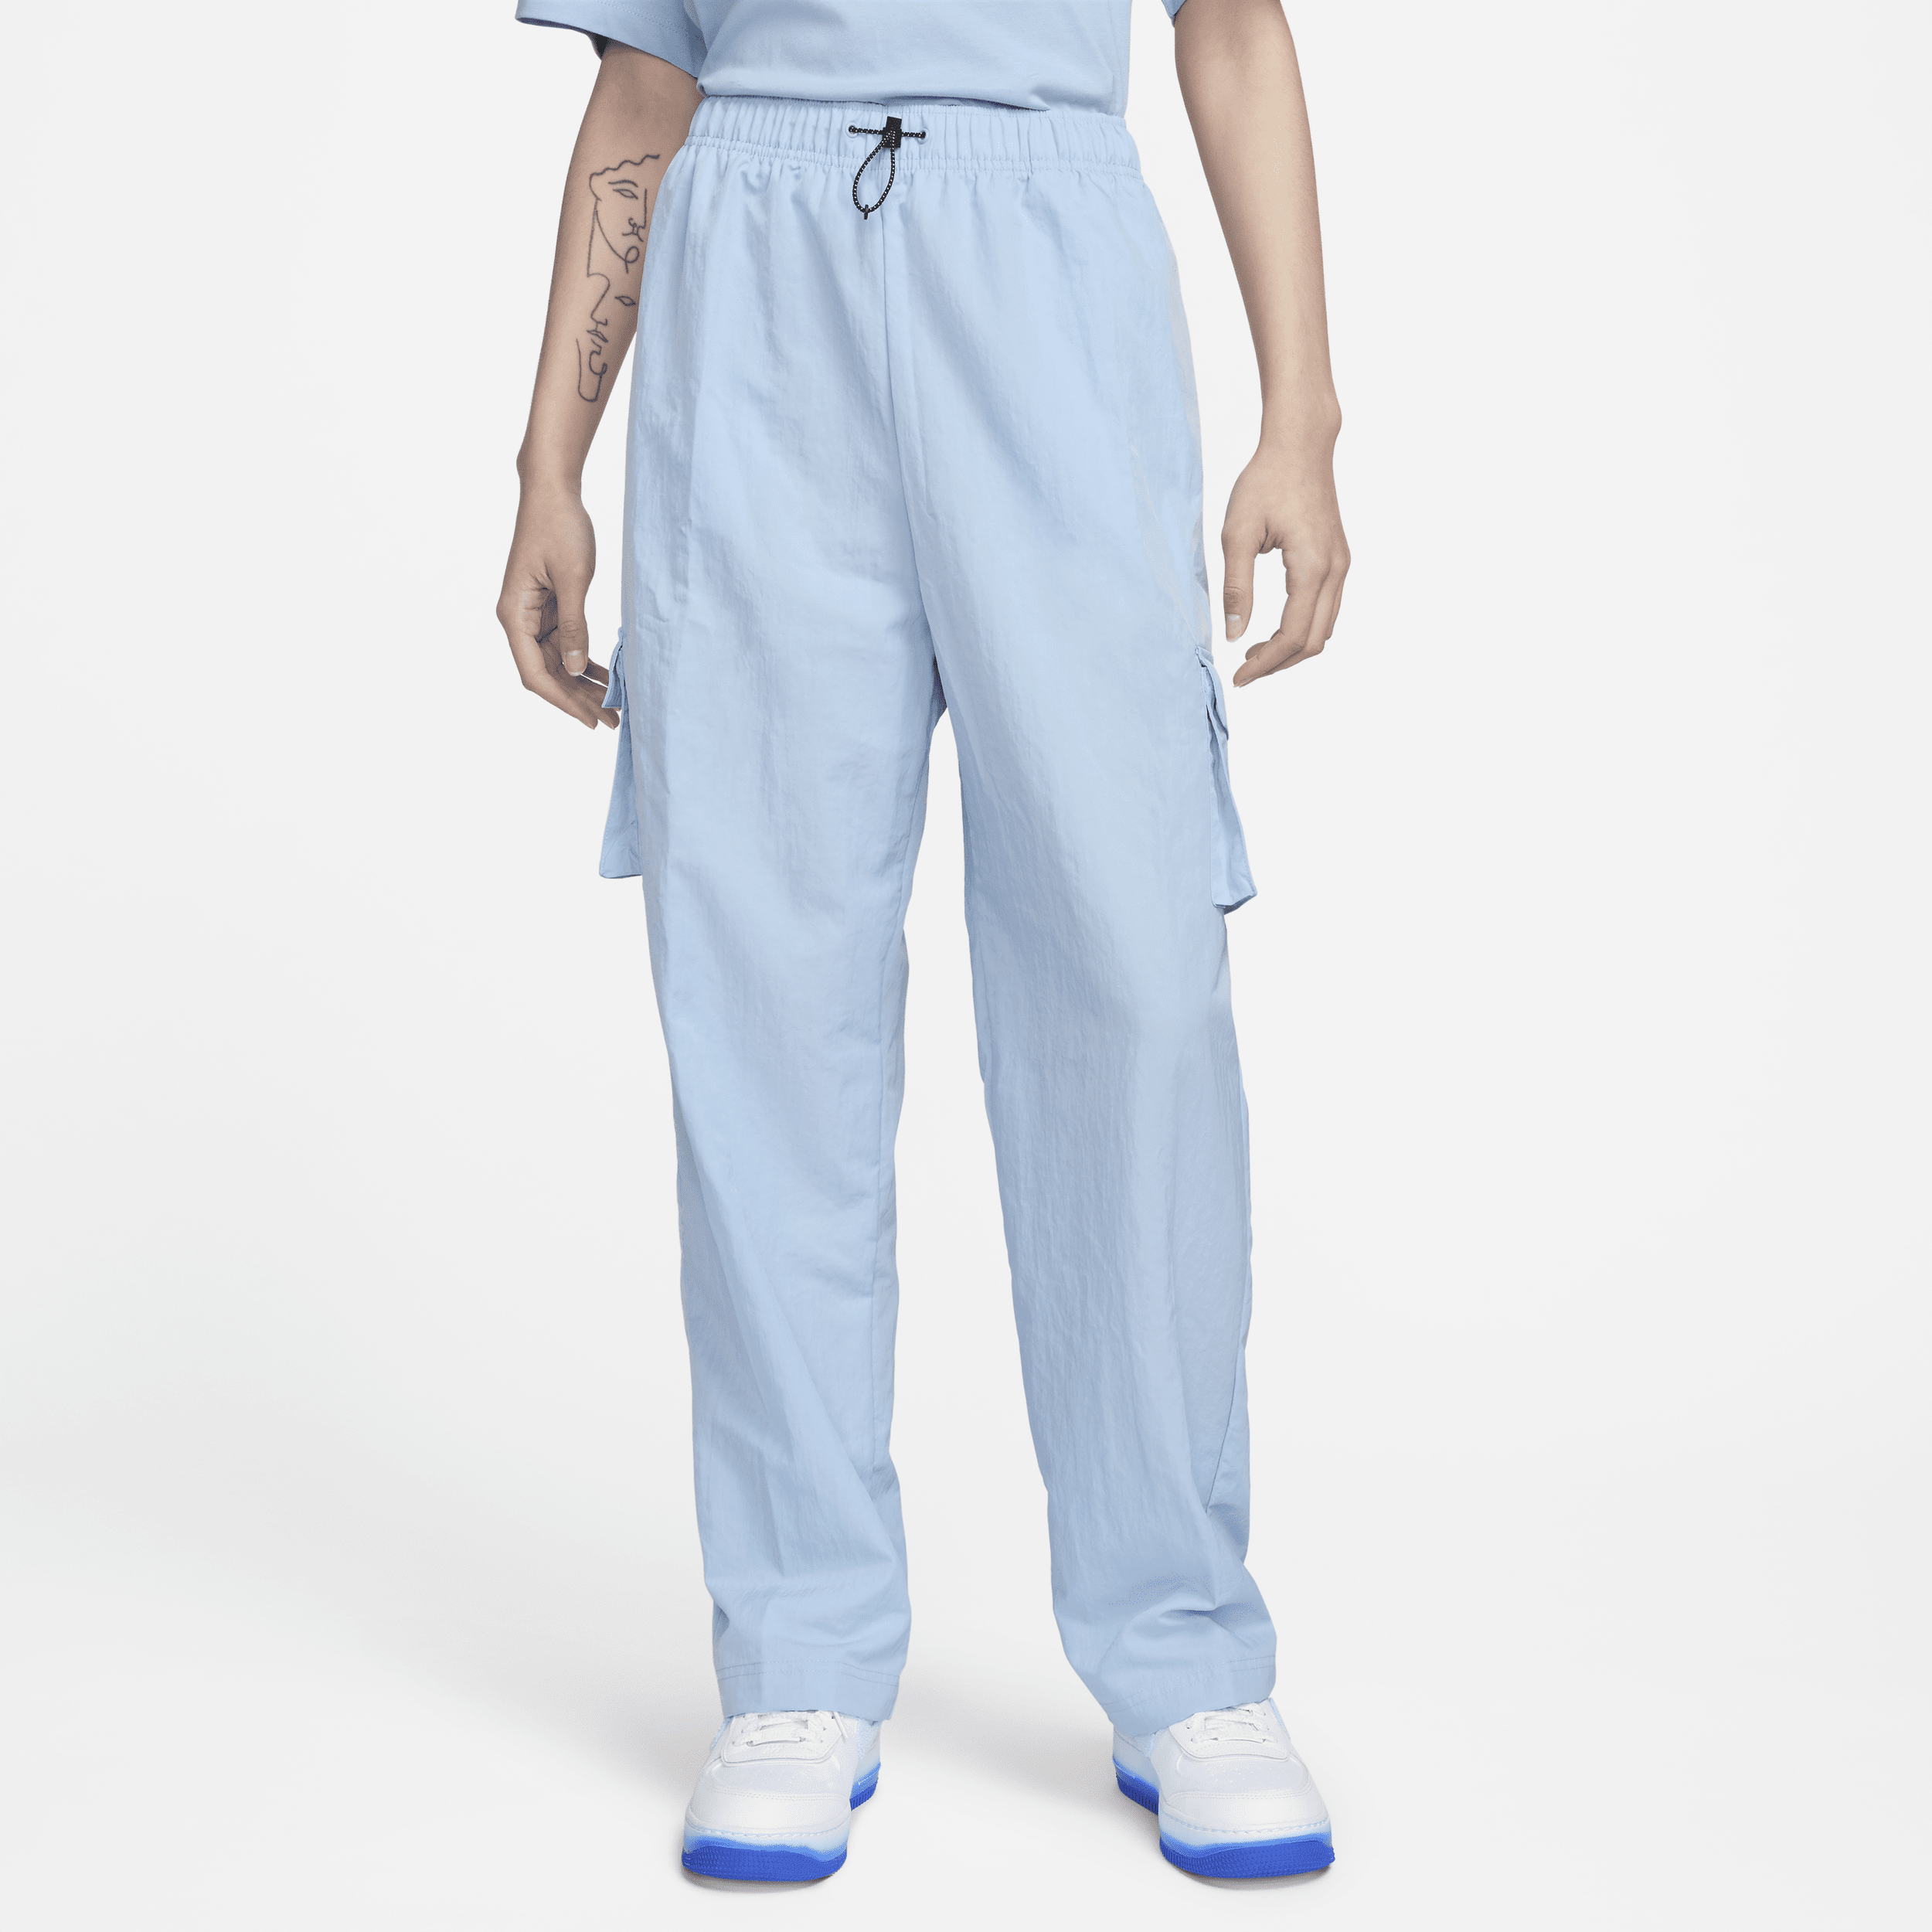 Pantaloni cargo a vita alta in tessuto Nike Sportswear Essential - Donna - Blu